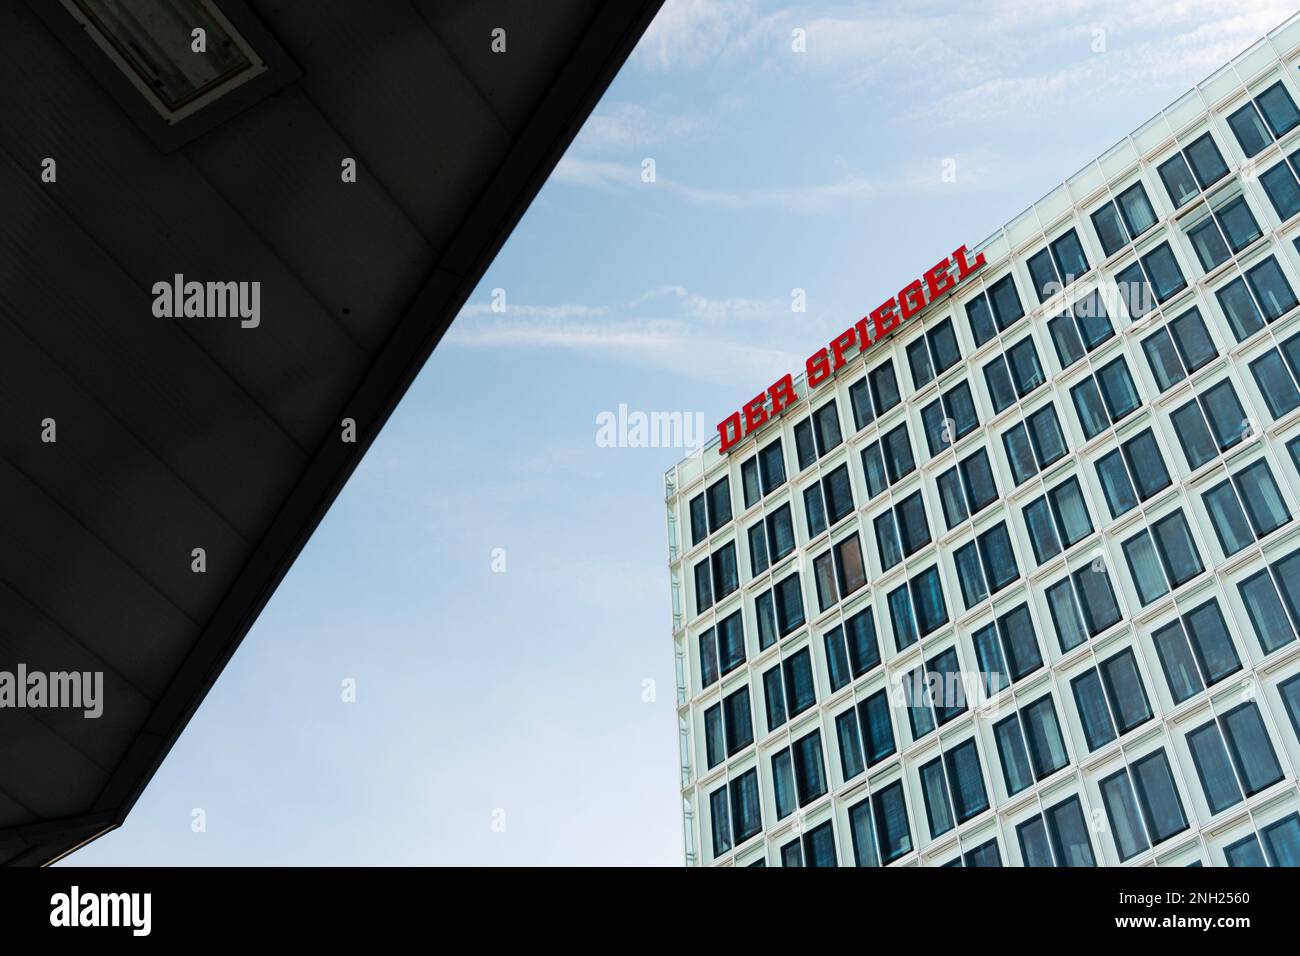 Der Spiegel ist eine deutsche Wochenzeitung, die in Hamburg veröffentlicht wird. Es ist eine der größten Nachrichtenwochen Europas mit einem wöchentlichen Zirku Stockfoto